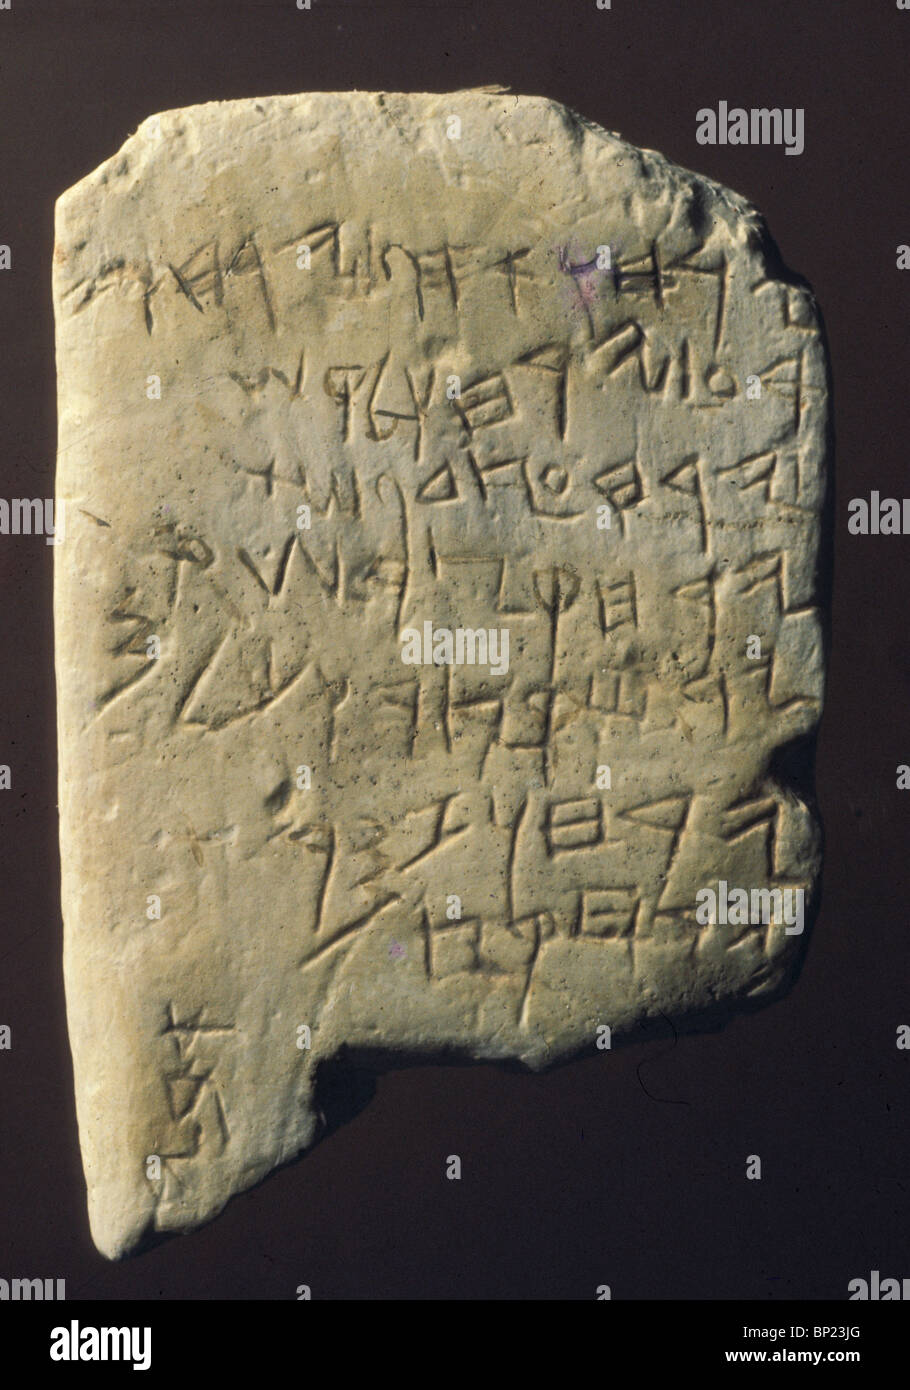 Calendrier GUÉZER une inscription en hébreu ancien texte gravé sur une pierre calcaire. Peut-être la plus ancienne inscription en hébreu jamais Banque D'Images